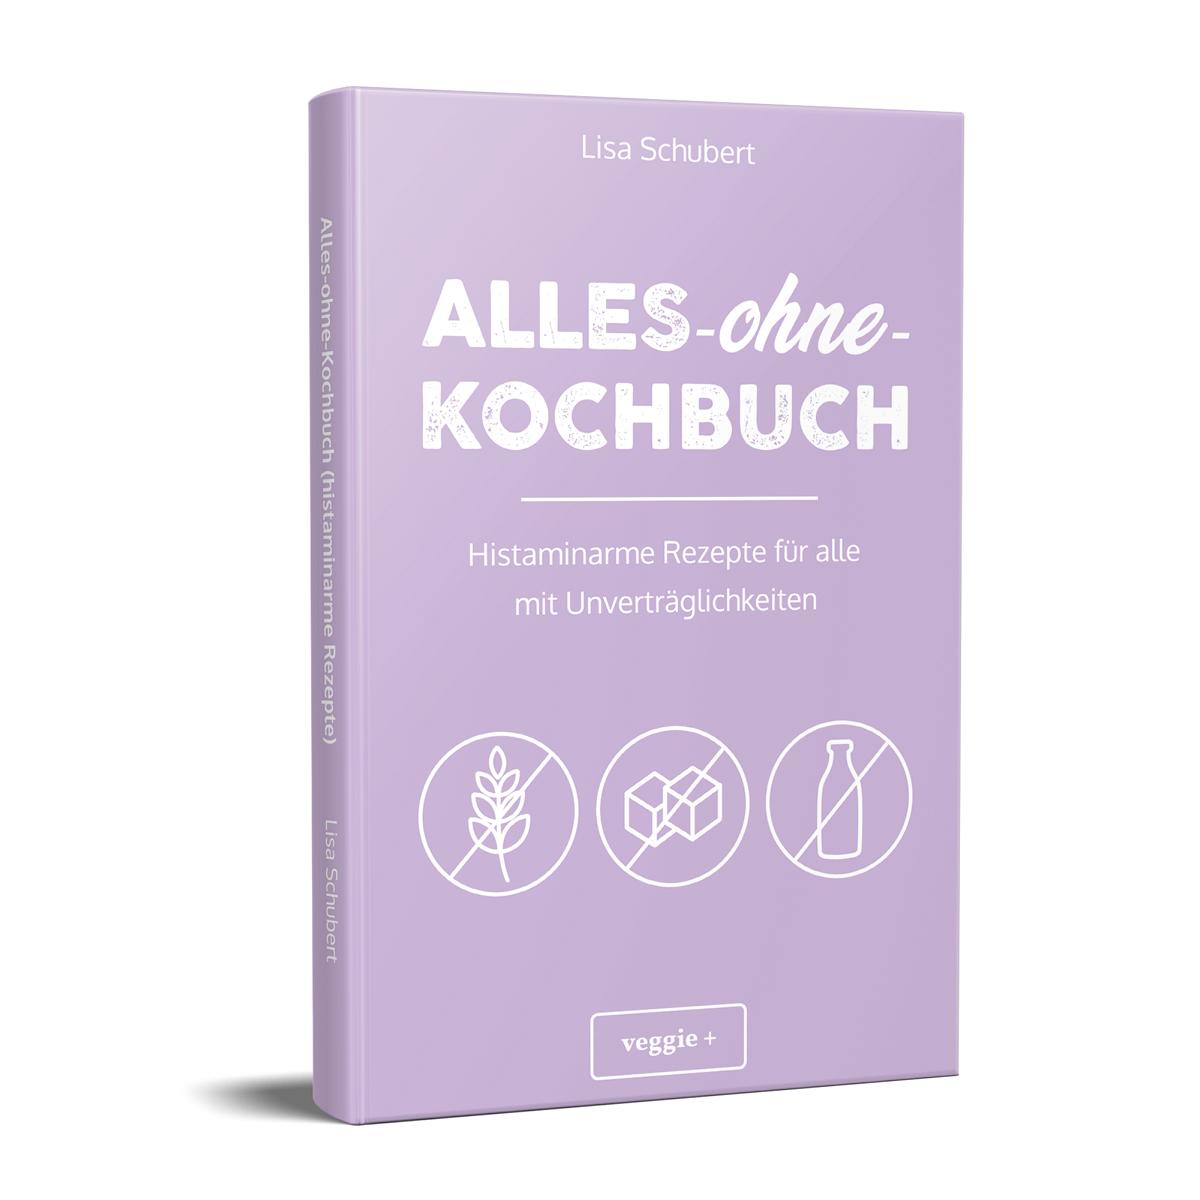 Alles-ohne-Kochbuch: Histaminarme Rezepte für alle mit Unverträglichkeiten von Lisa Schubert im veggie + Verlag